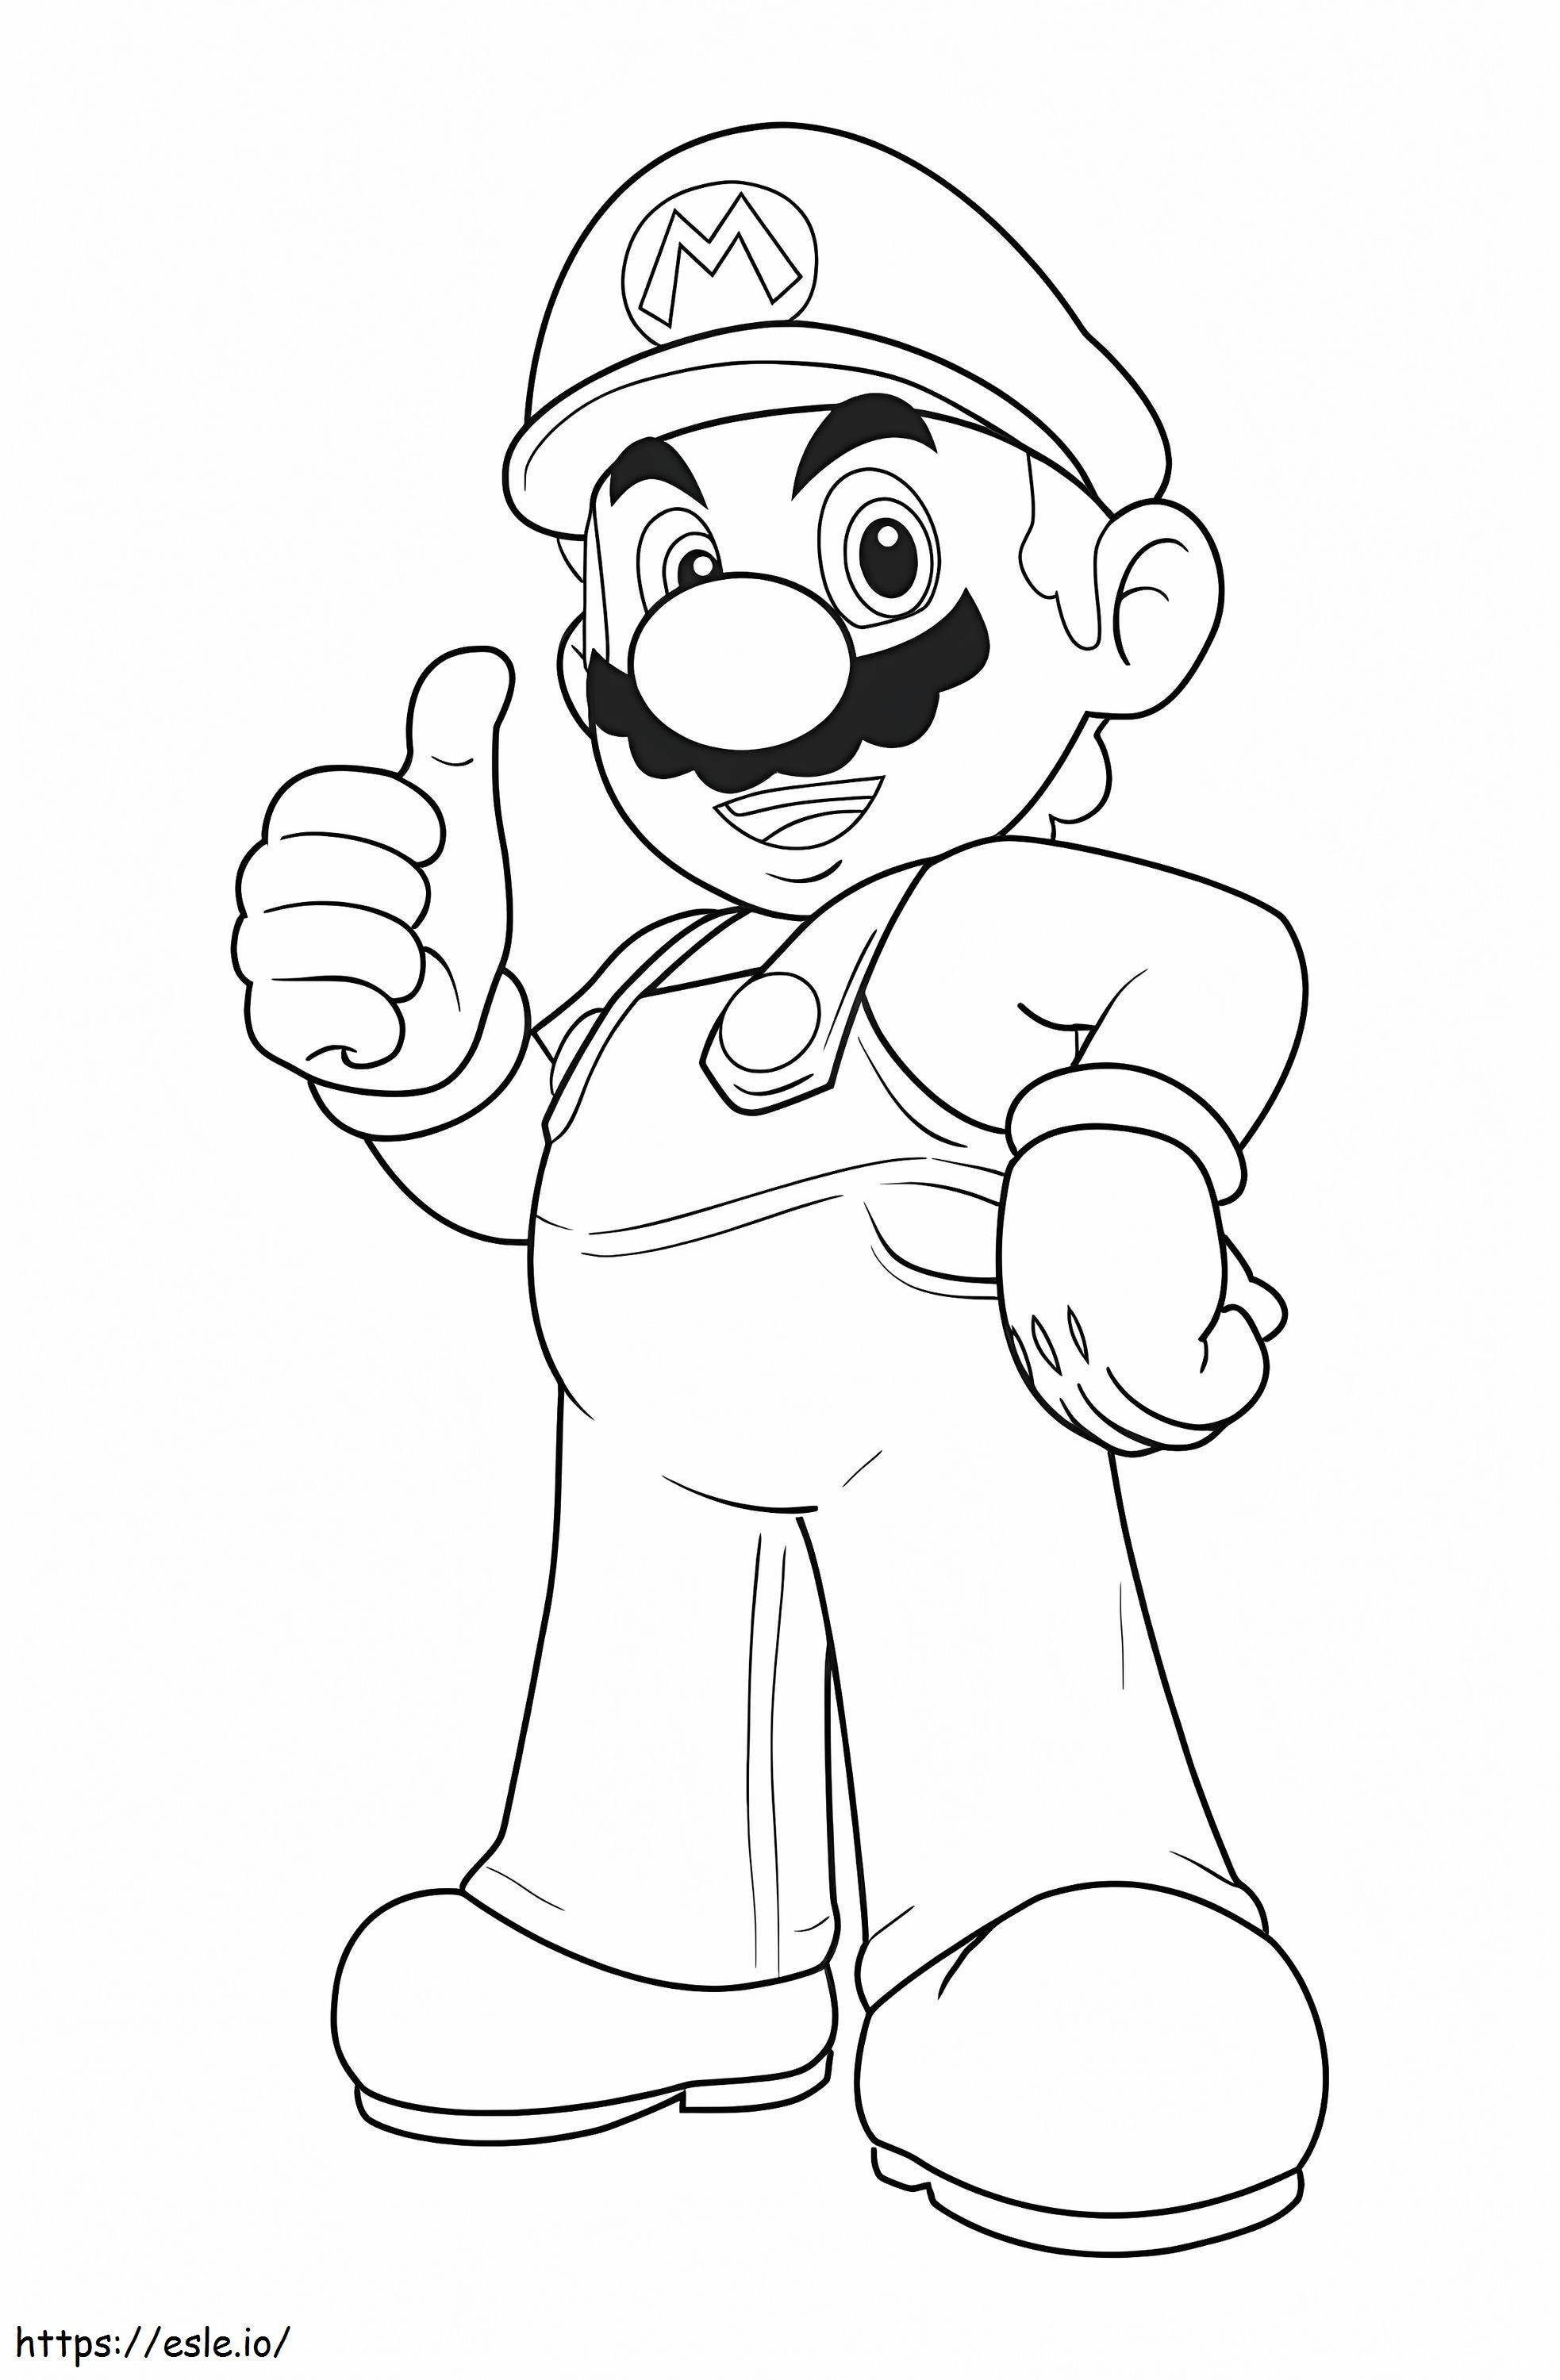 Großer Mario ausmalbilder